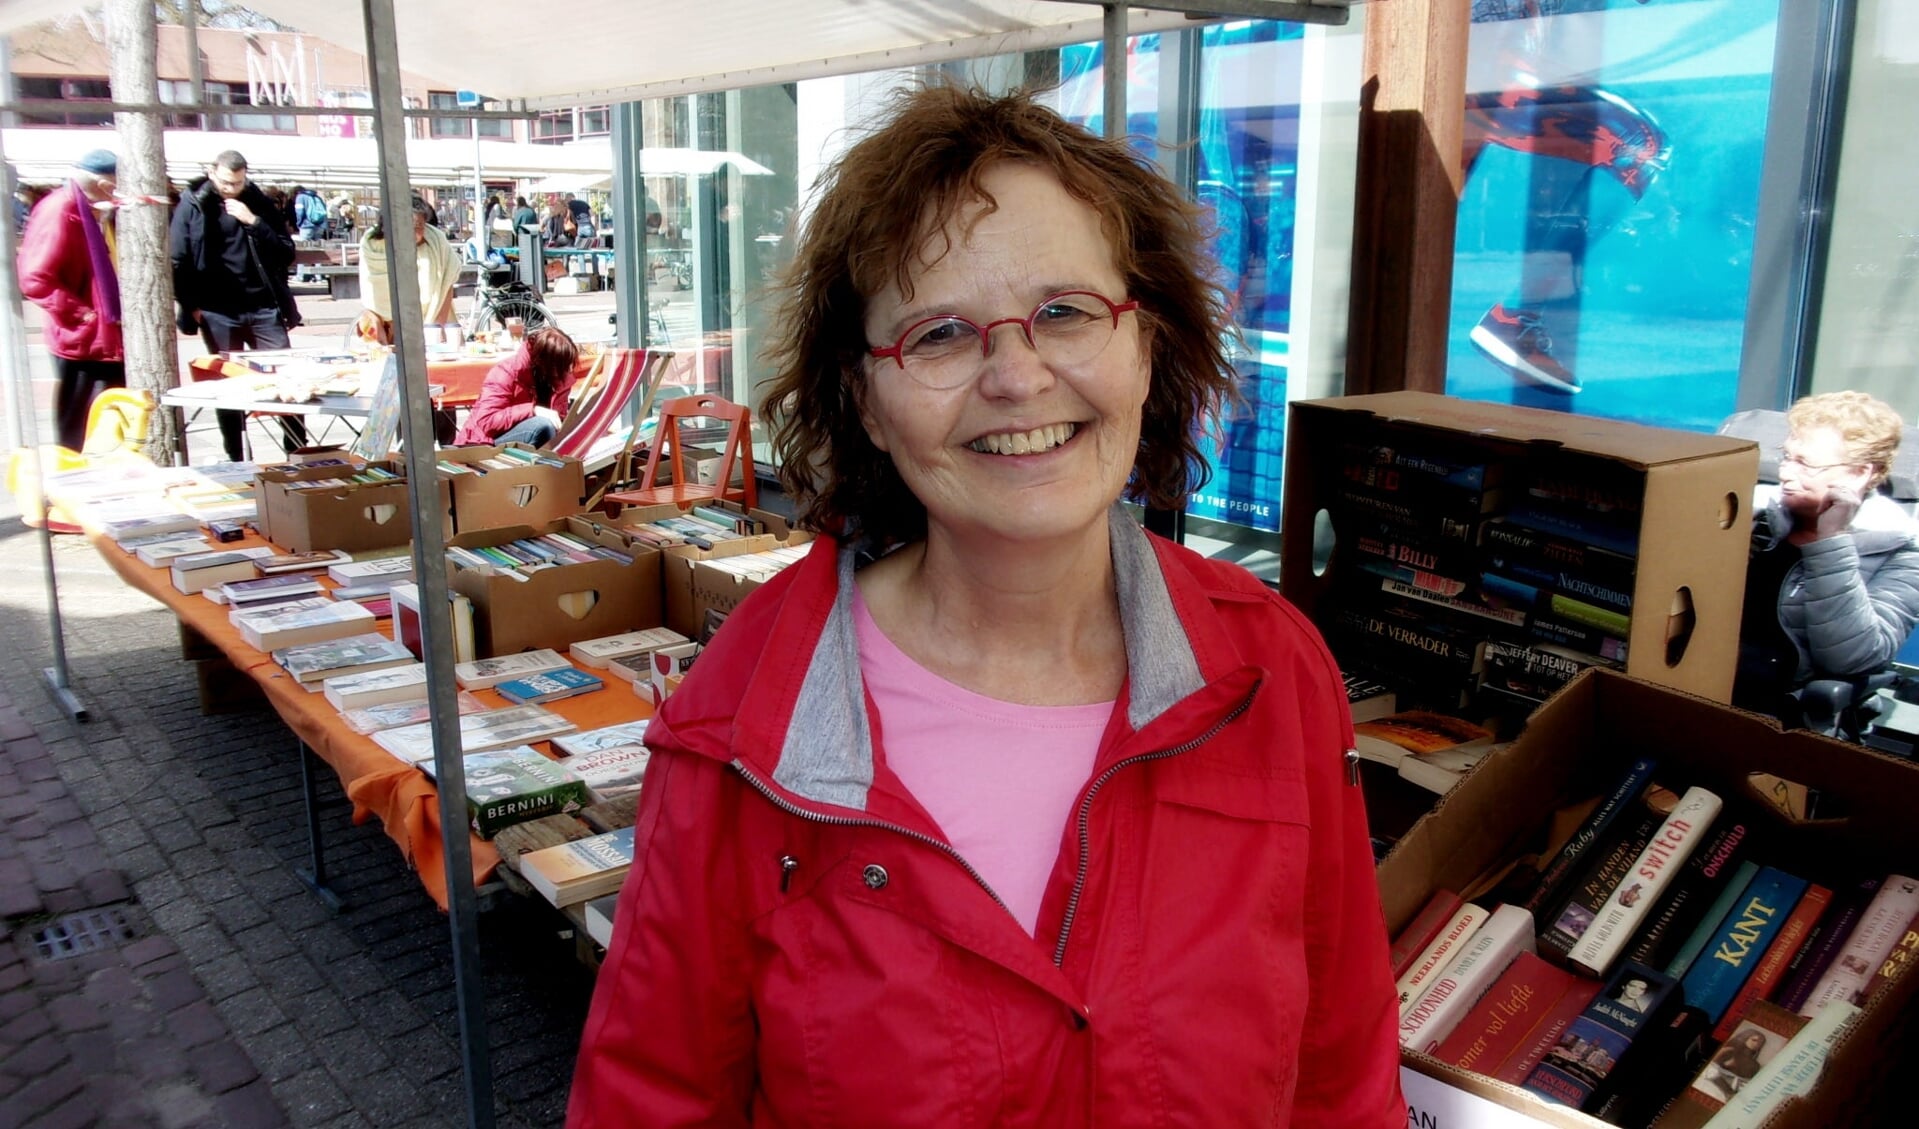 Mieke van Hooft op de boekenmarkt: "Boeken vormen een open deur naar een andere wereld, daar waar je wilt zijn"